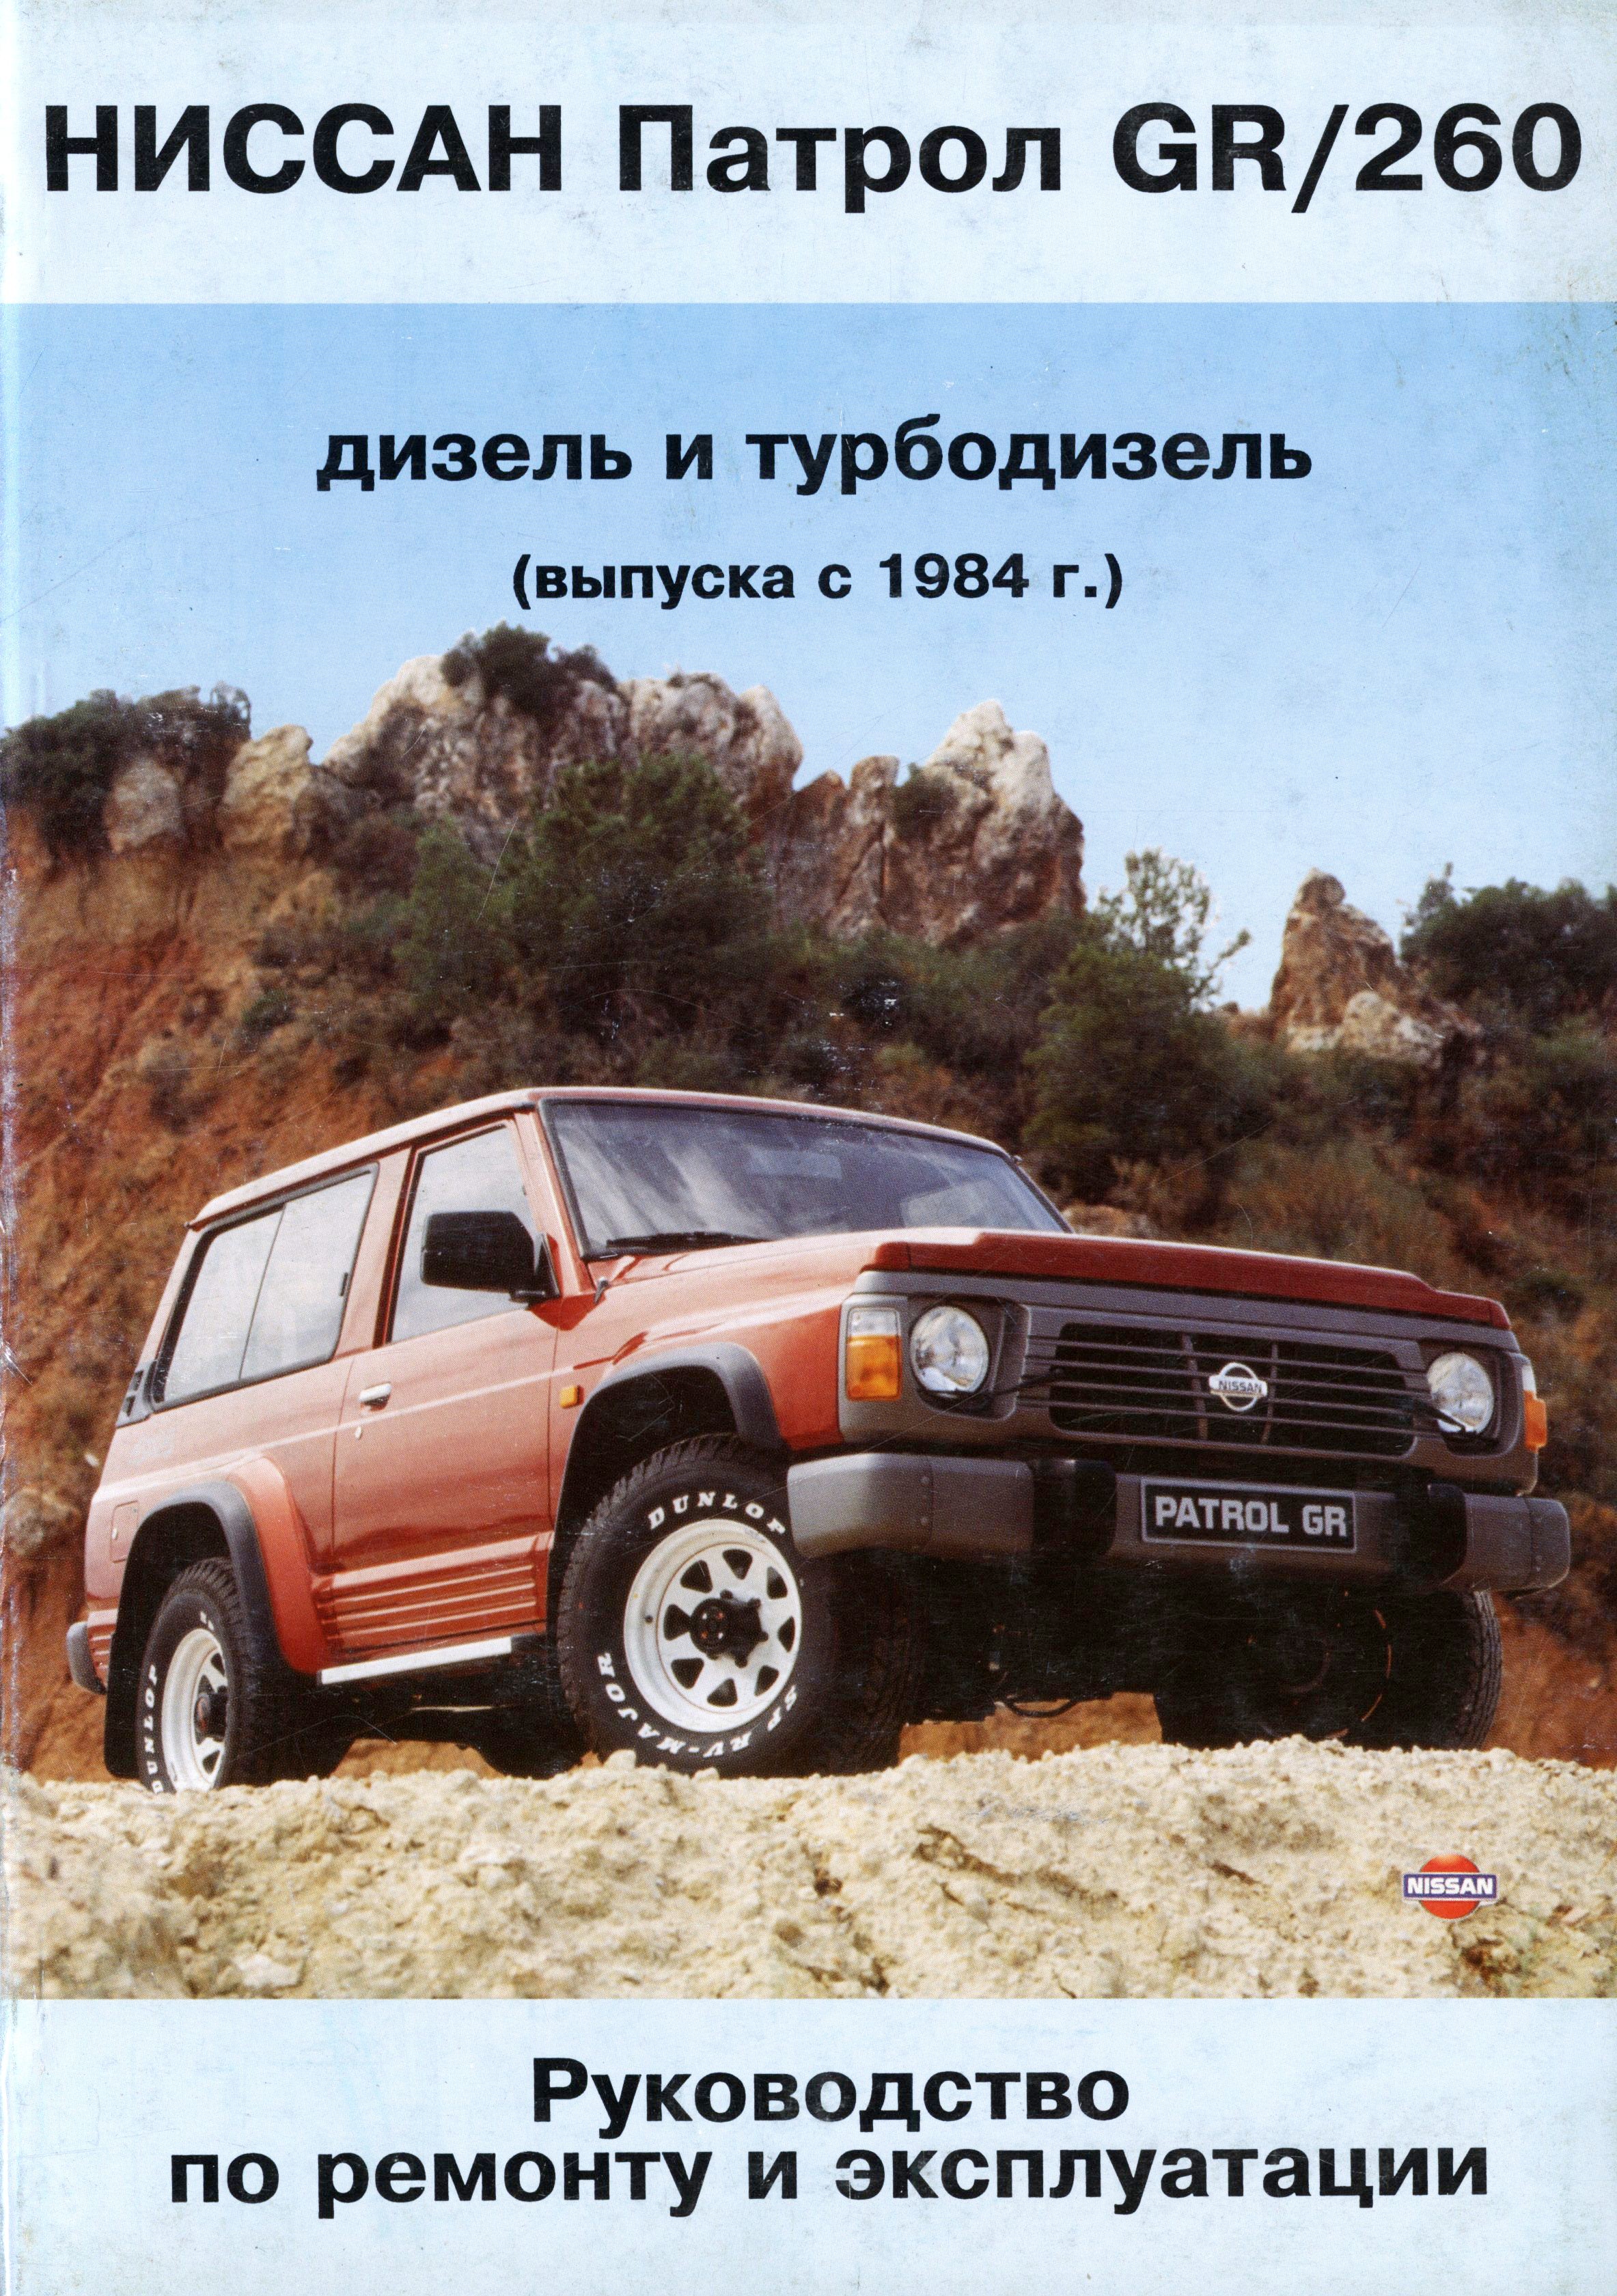 NISSAN PATROL GR / 260 с 1984 и 1989 дизель / турбодизель Пособие по ремонту и эксплуатации